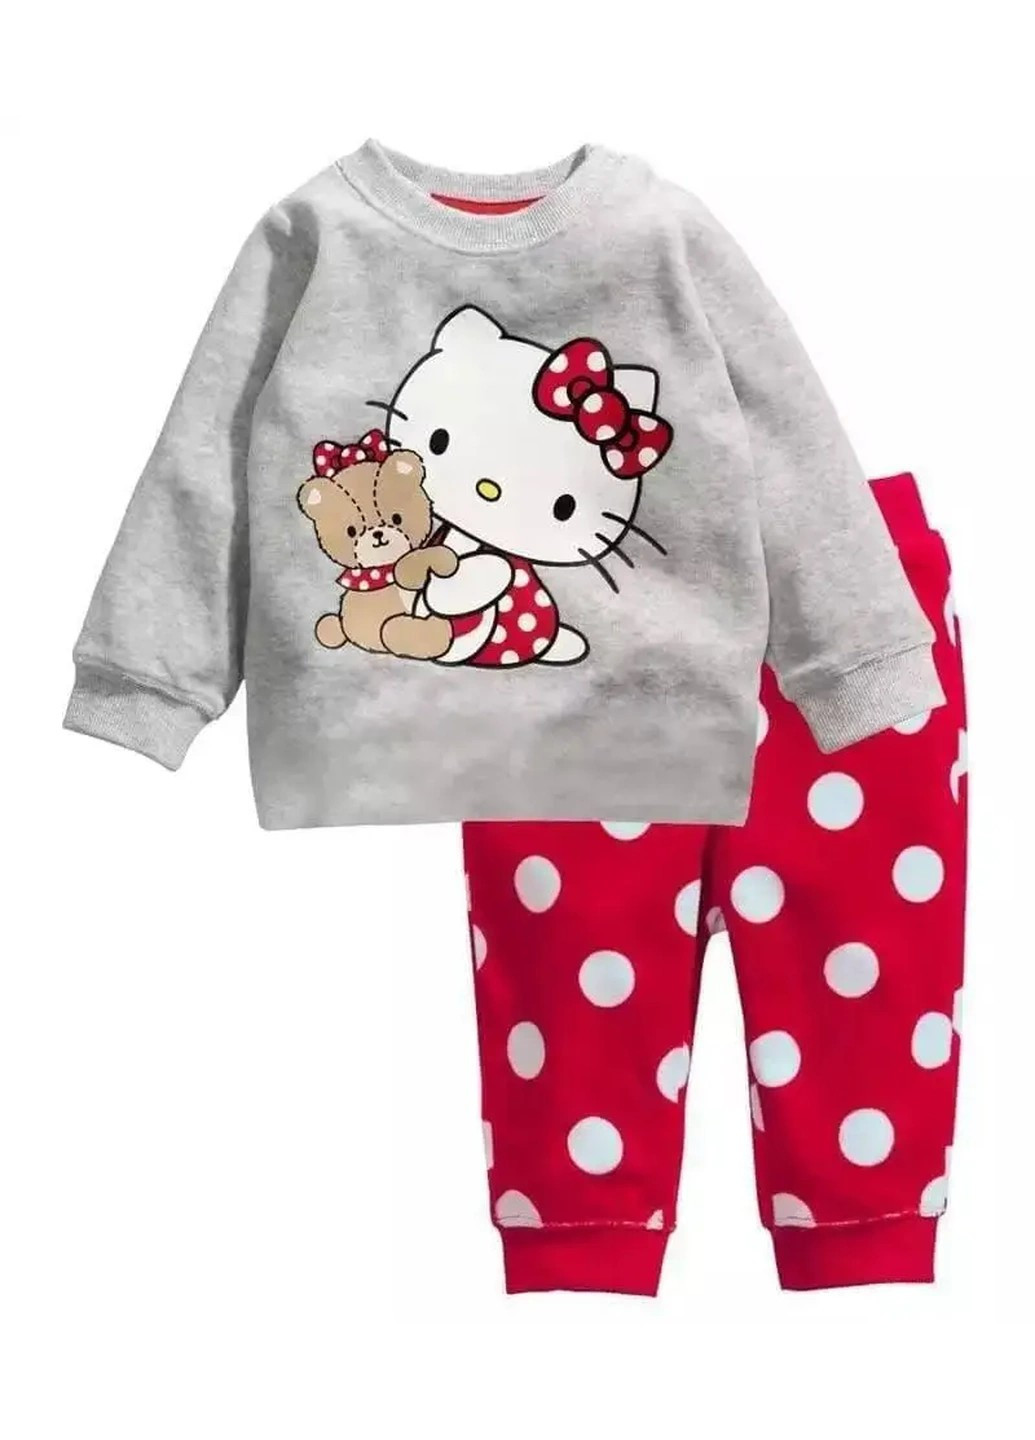 Червона чудова і модна дитяча піжама для дівчинки у віці п'яти років. рост 110см. Baby